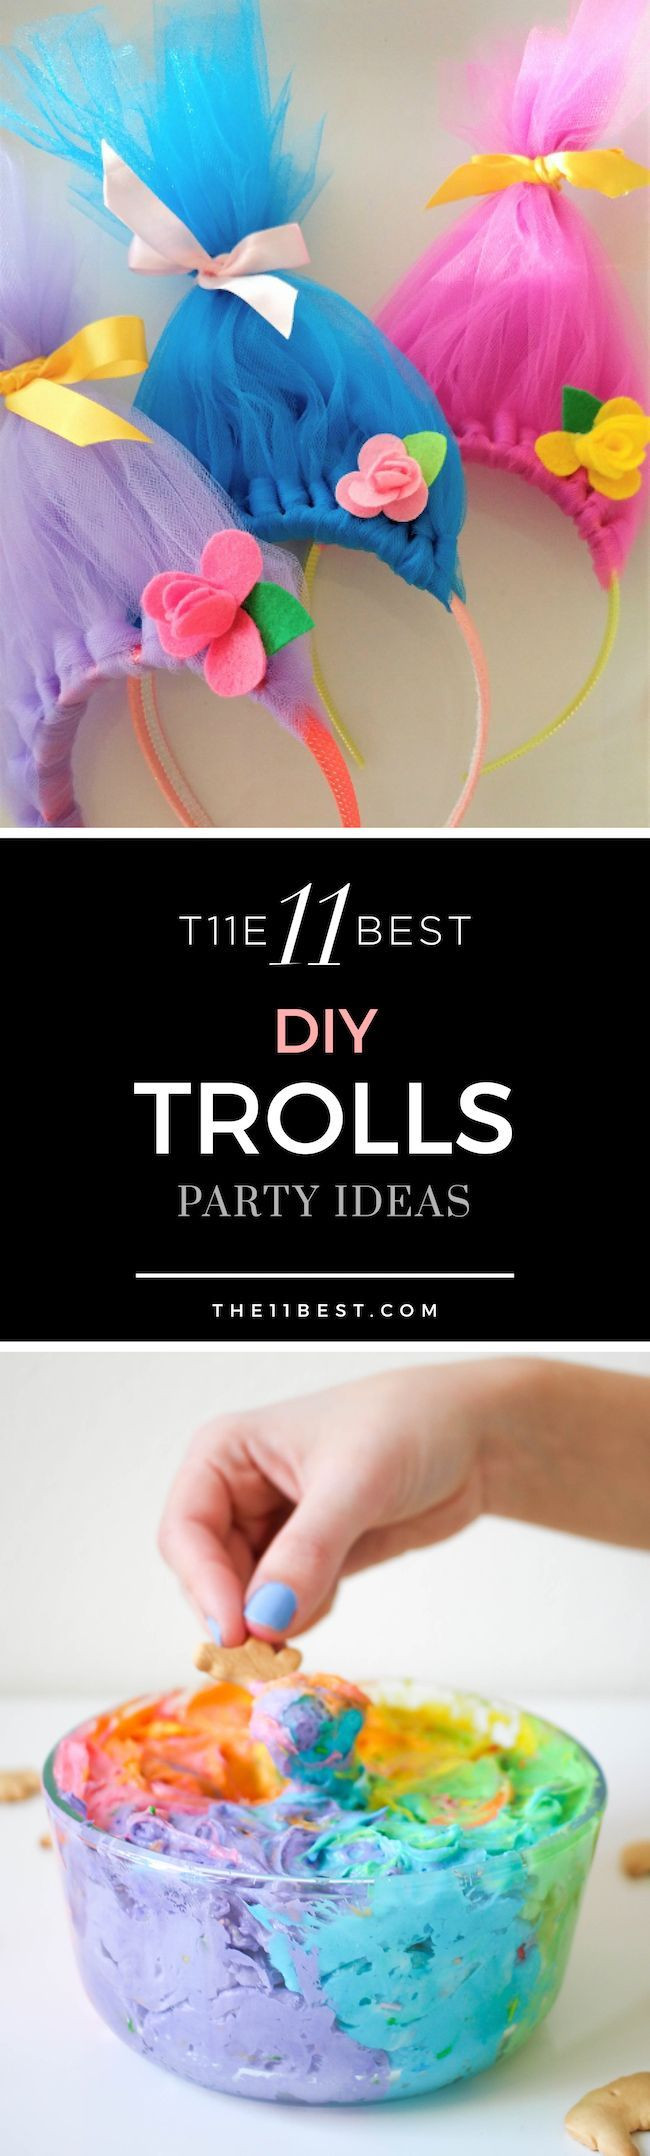 Trolls Diy Party Ideas
 DIY Trolls party ideas Trolls birthday party